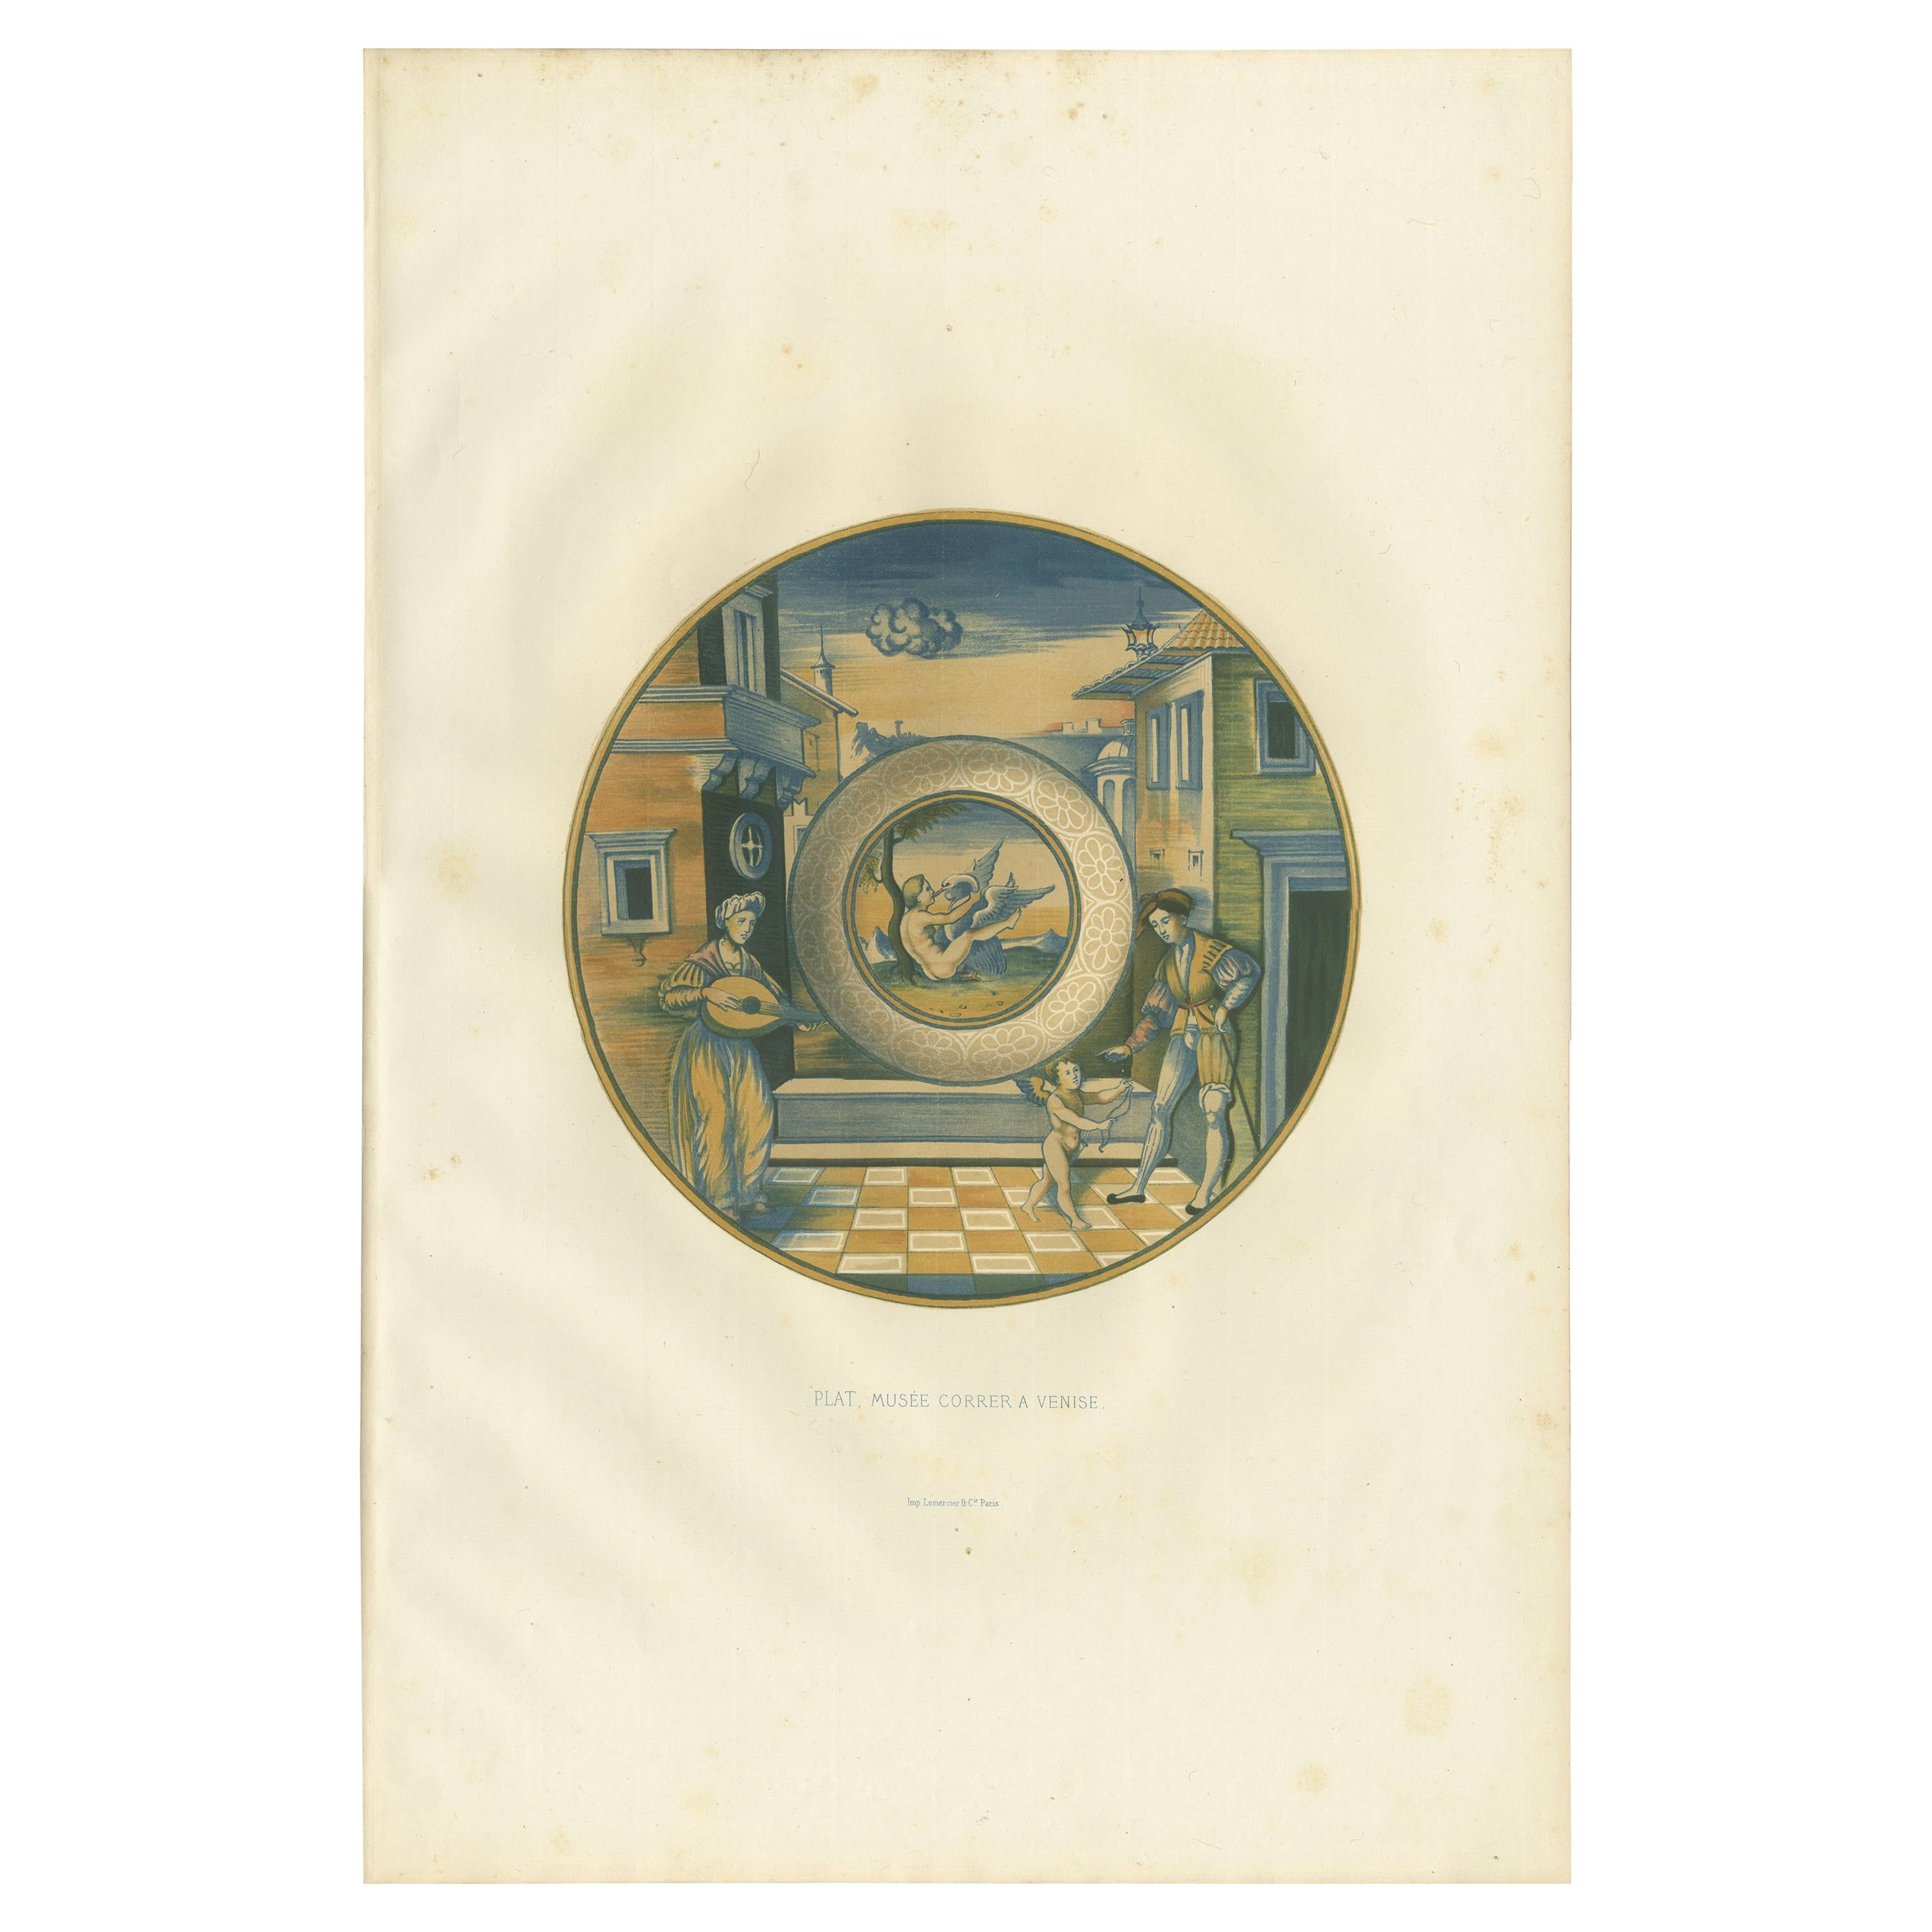 Impression ancienne d'une assiette de Museo Correr à Venise par Delange '1869'